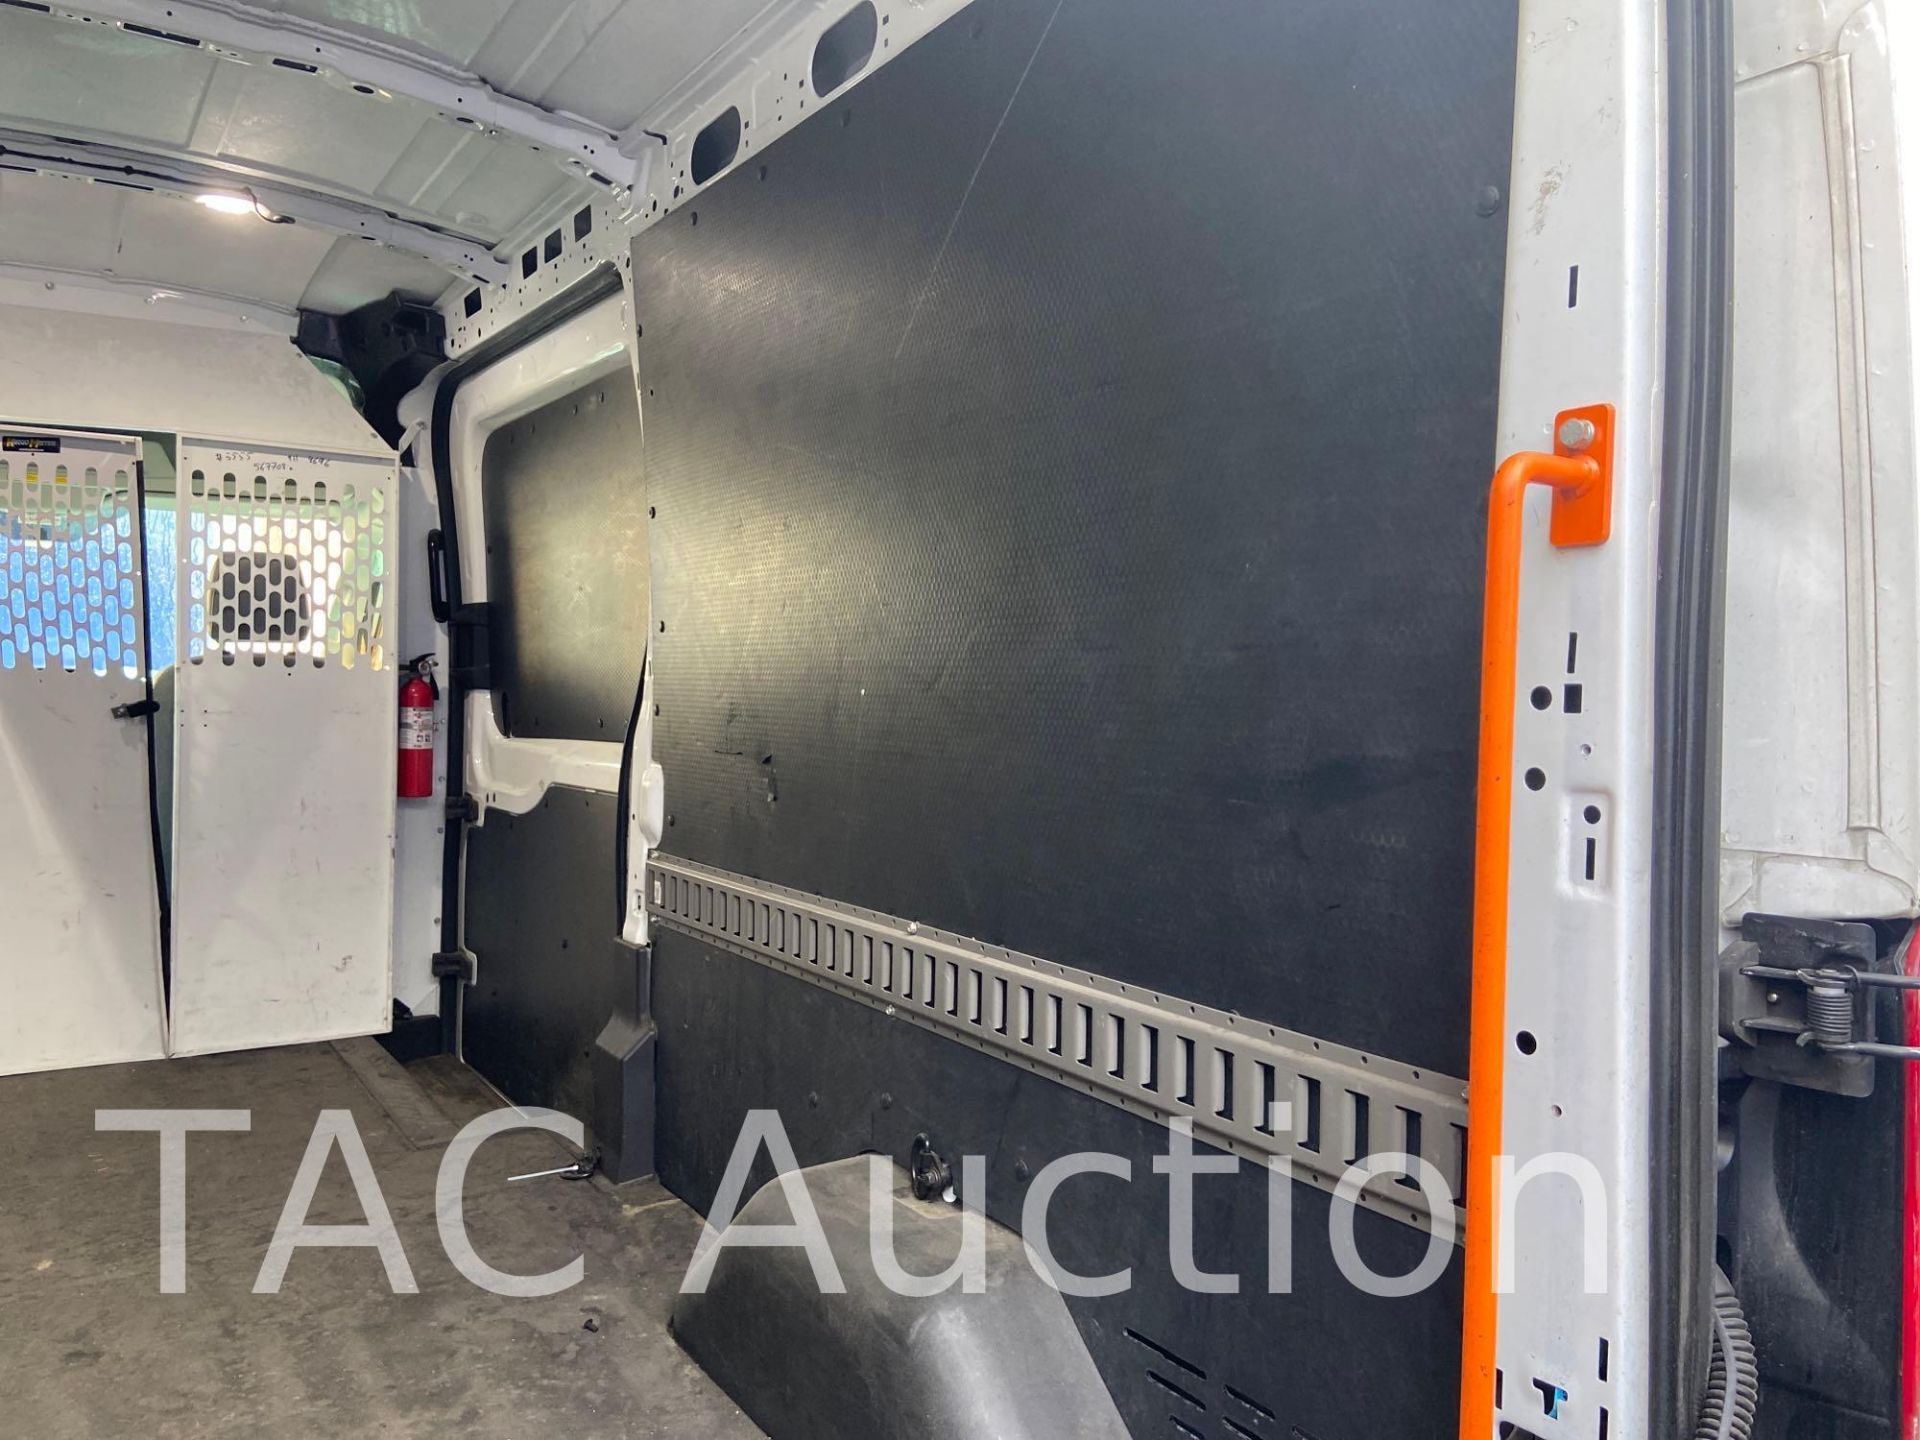 2019 Ford Transit 150 Cargo Van - Image 49 of 66